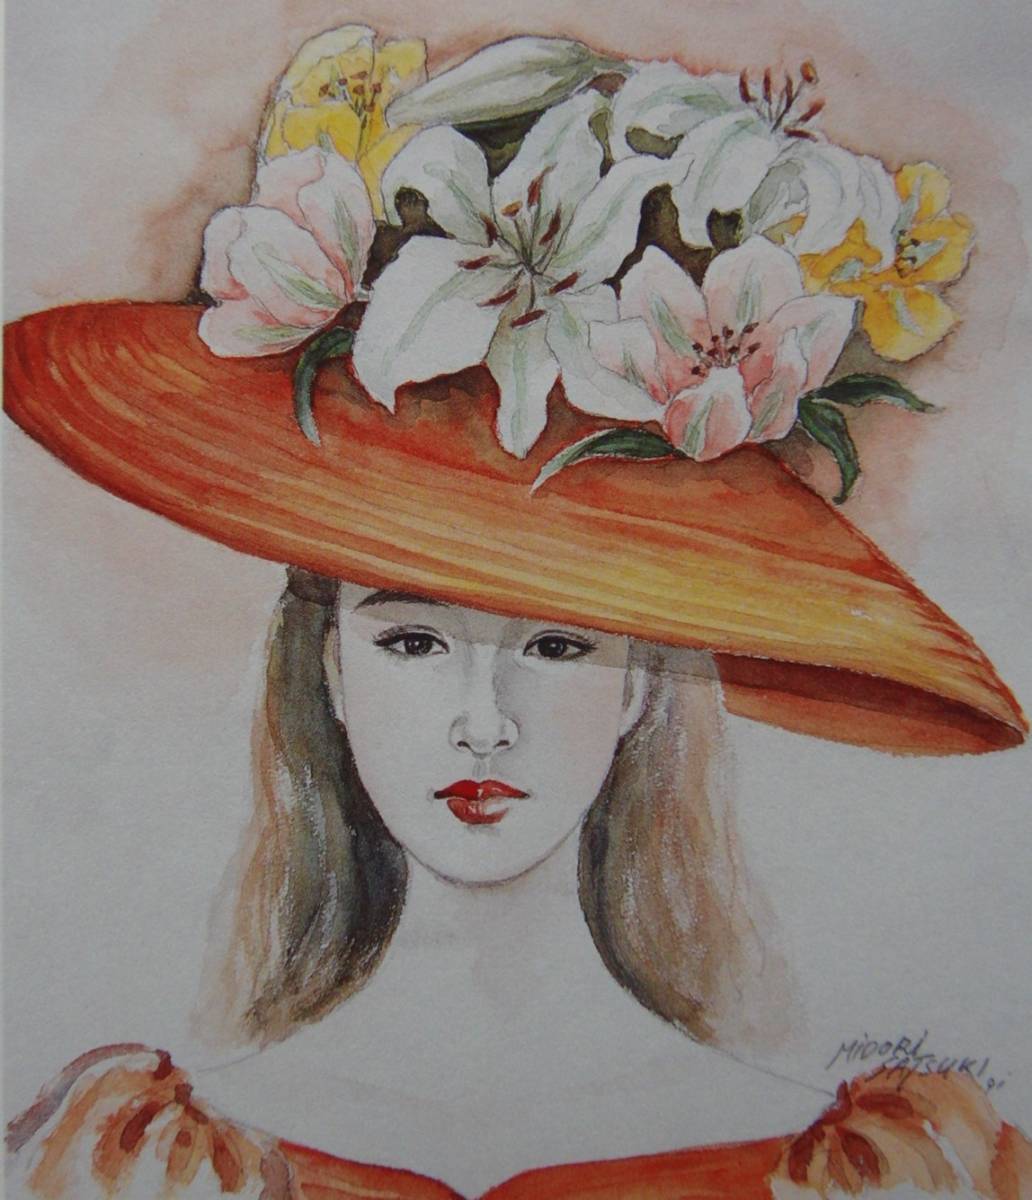 Sombrero de flores 1, mayo midori, Libros de arte raros y cuadros enmarcados., Nuevo marco japonés, En buena condición, envío gratis, Obra de arte, Cuadro, Retratos